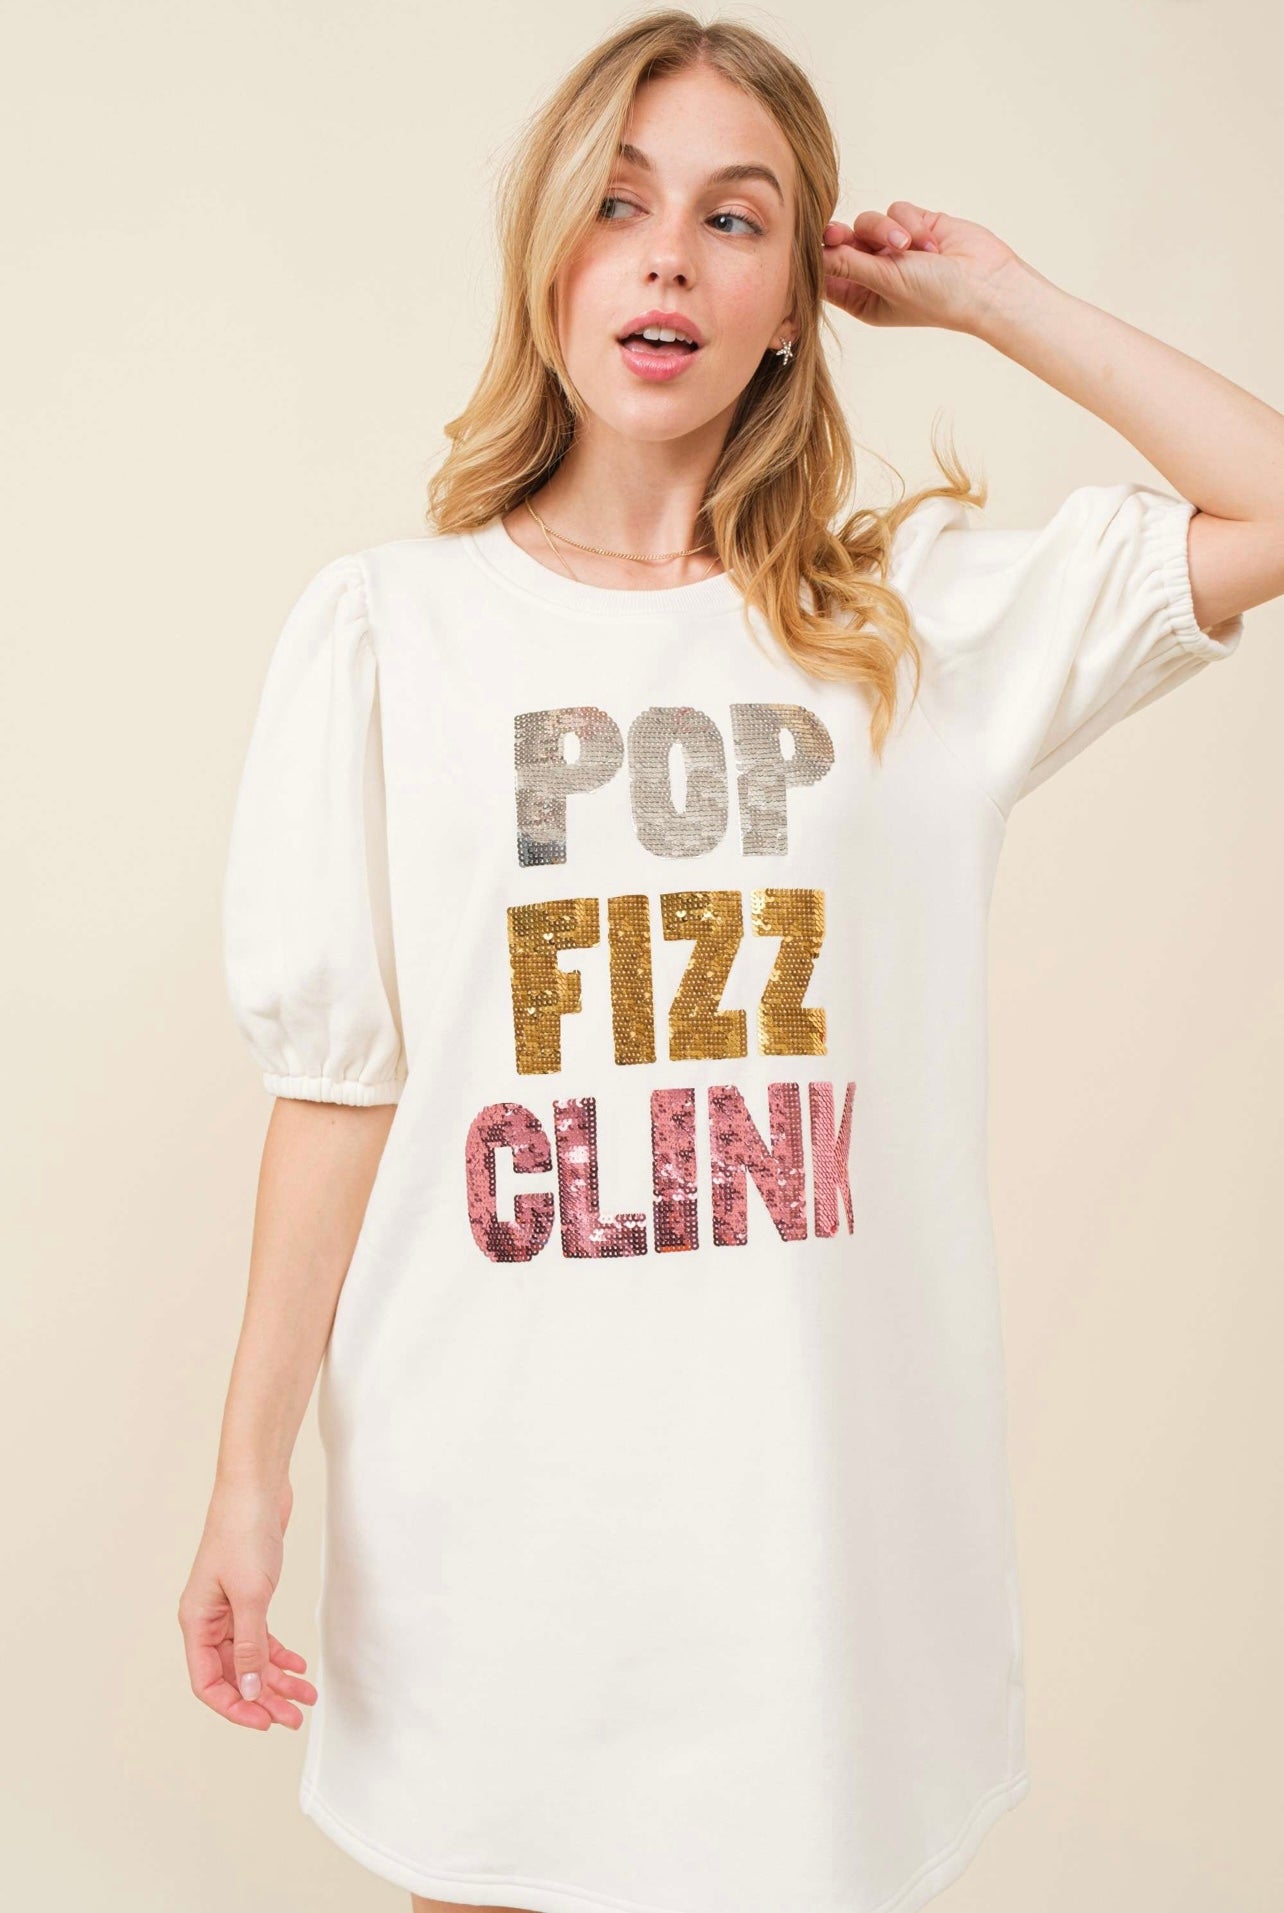 Pop, Fizz, Clink Sequin Dress